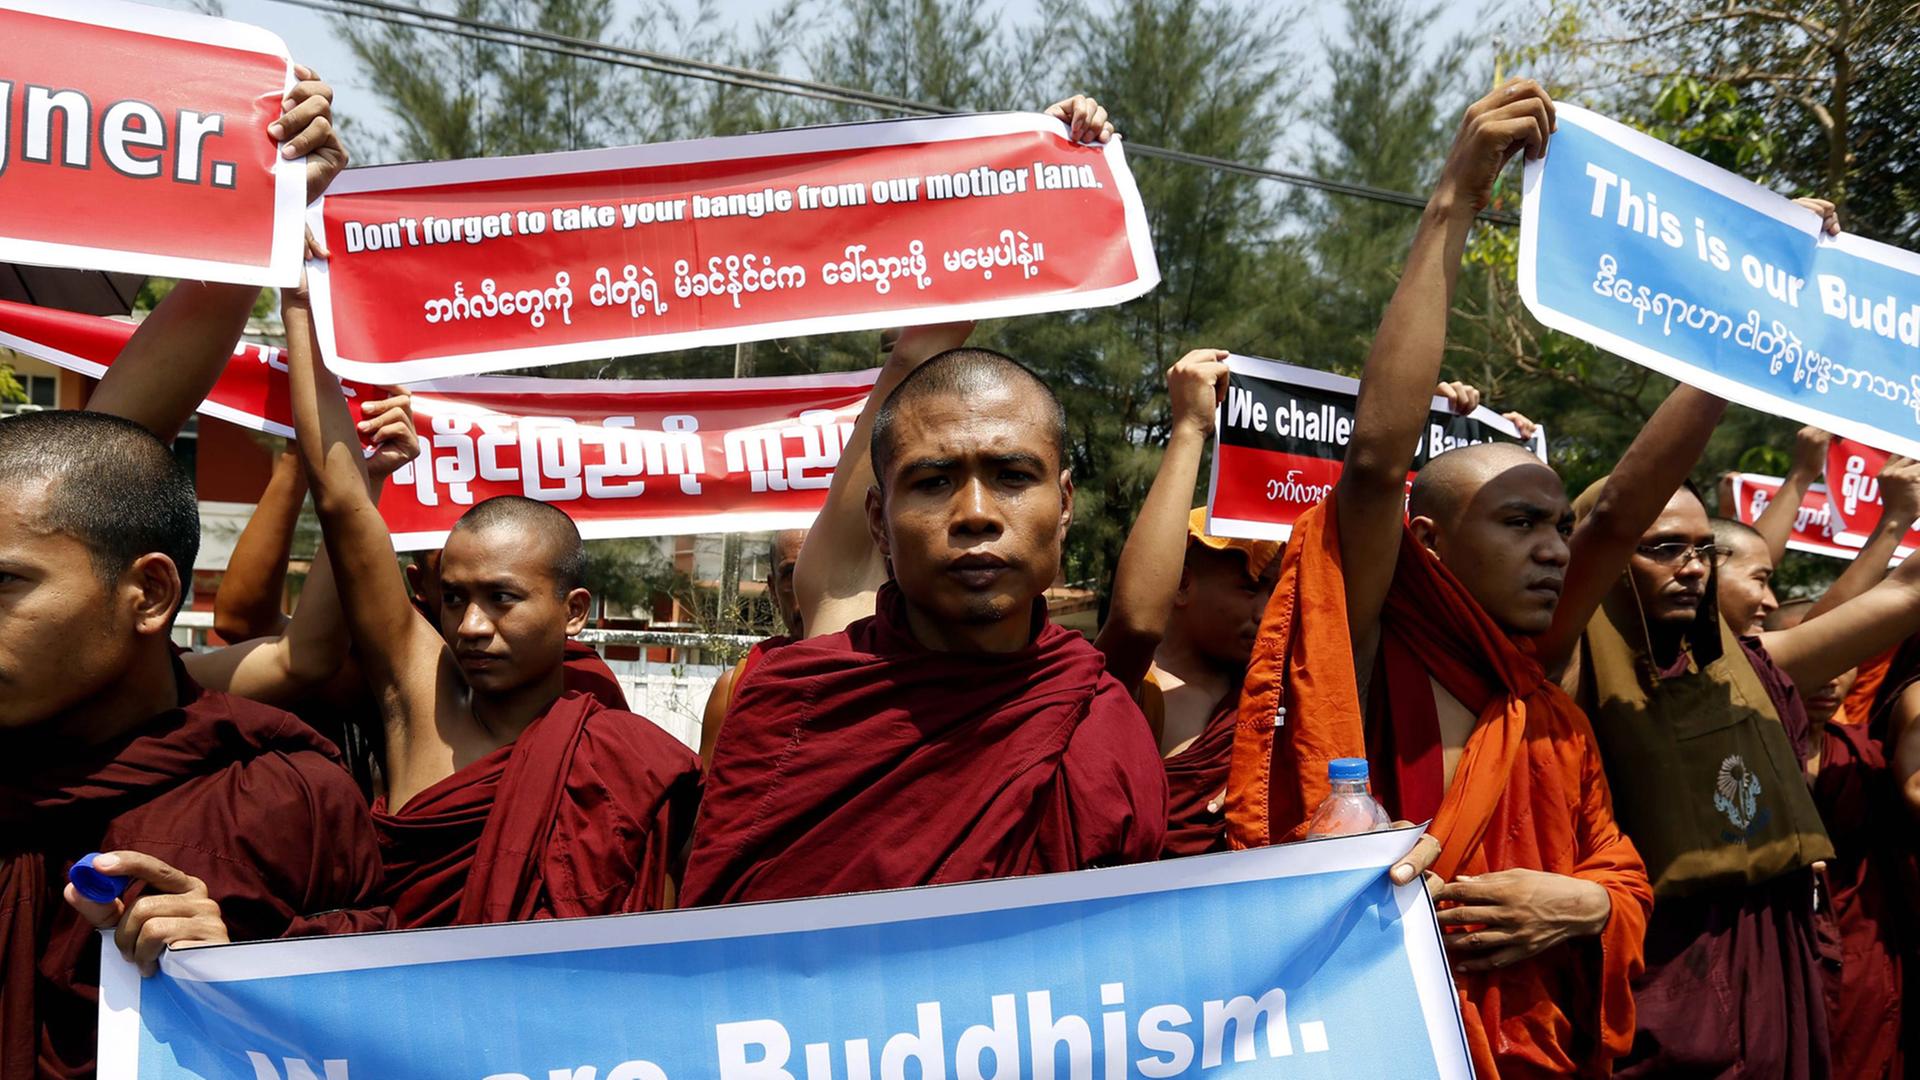 Buddhistische Mönche halten auf einer Demonstration Plakate hoch. Auf einem ist geschrieben "We ar Buddhism."